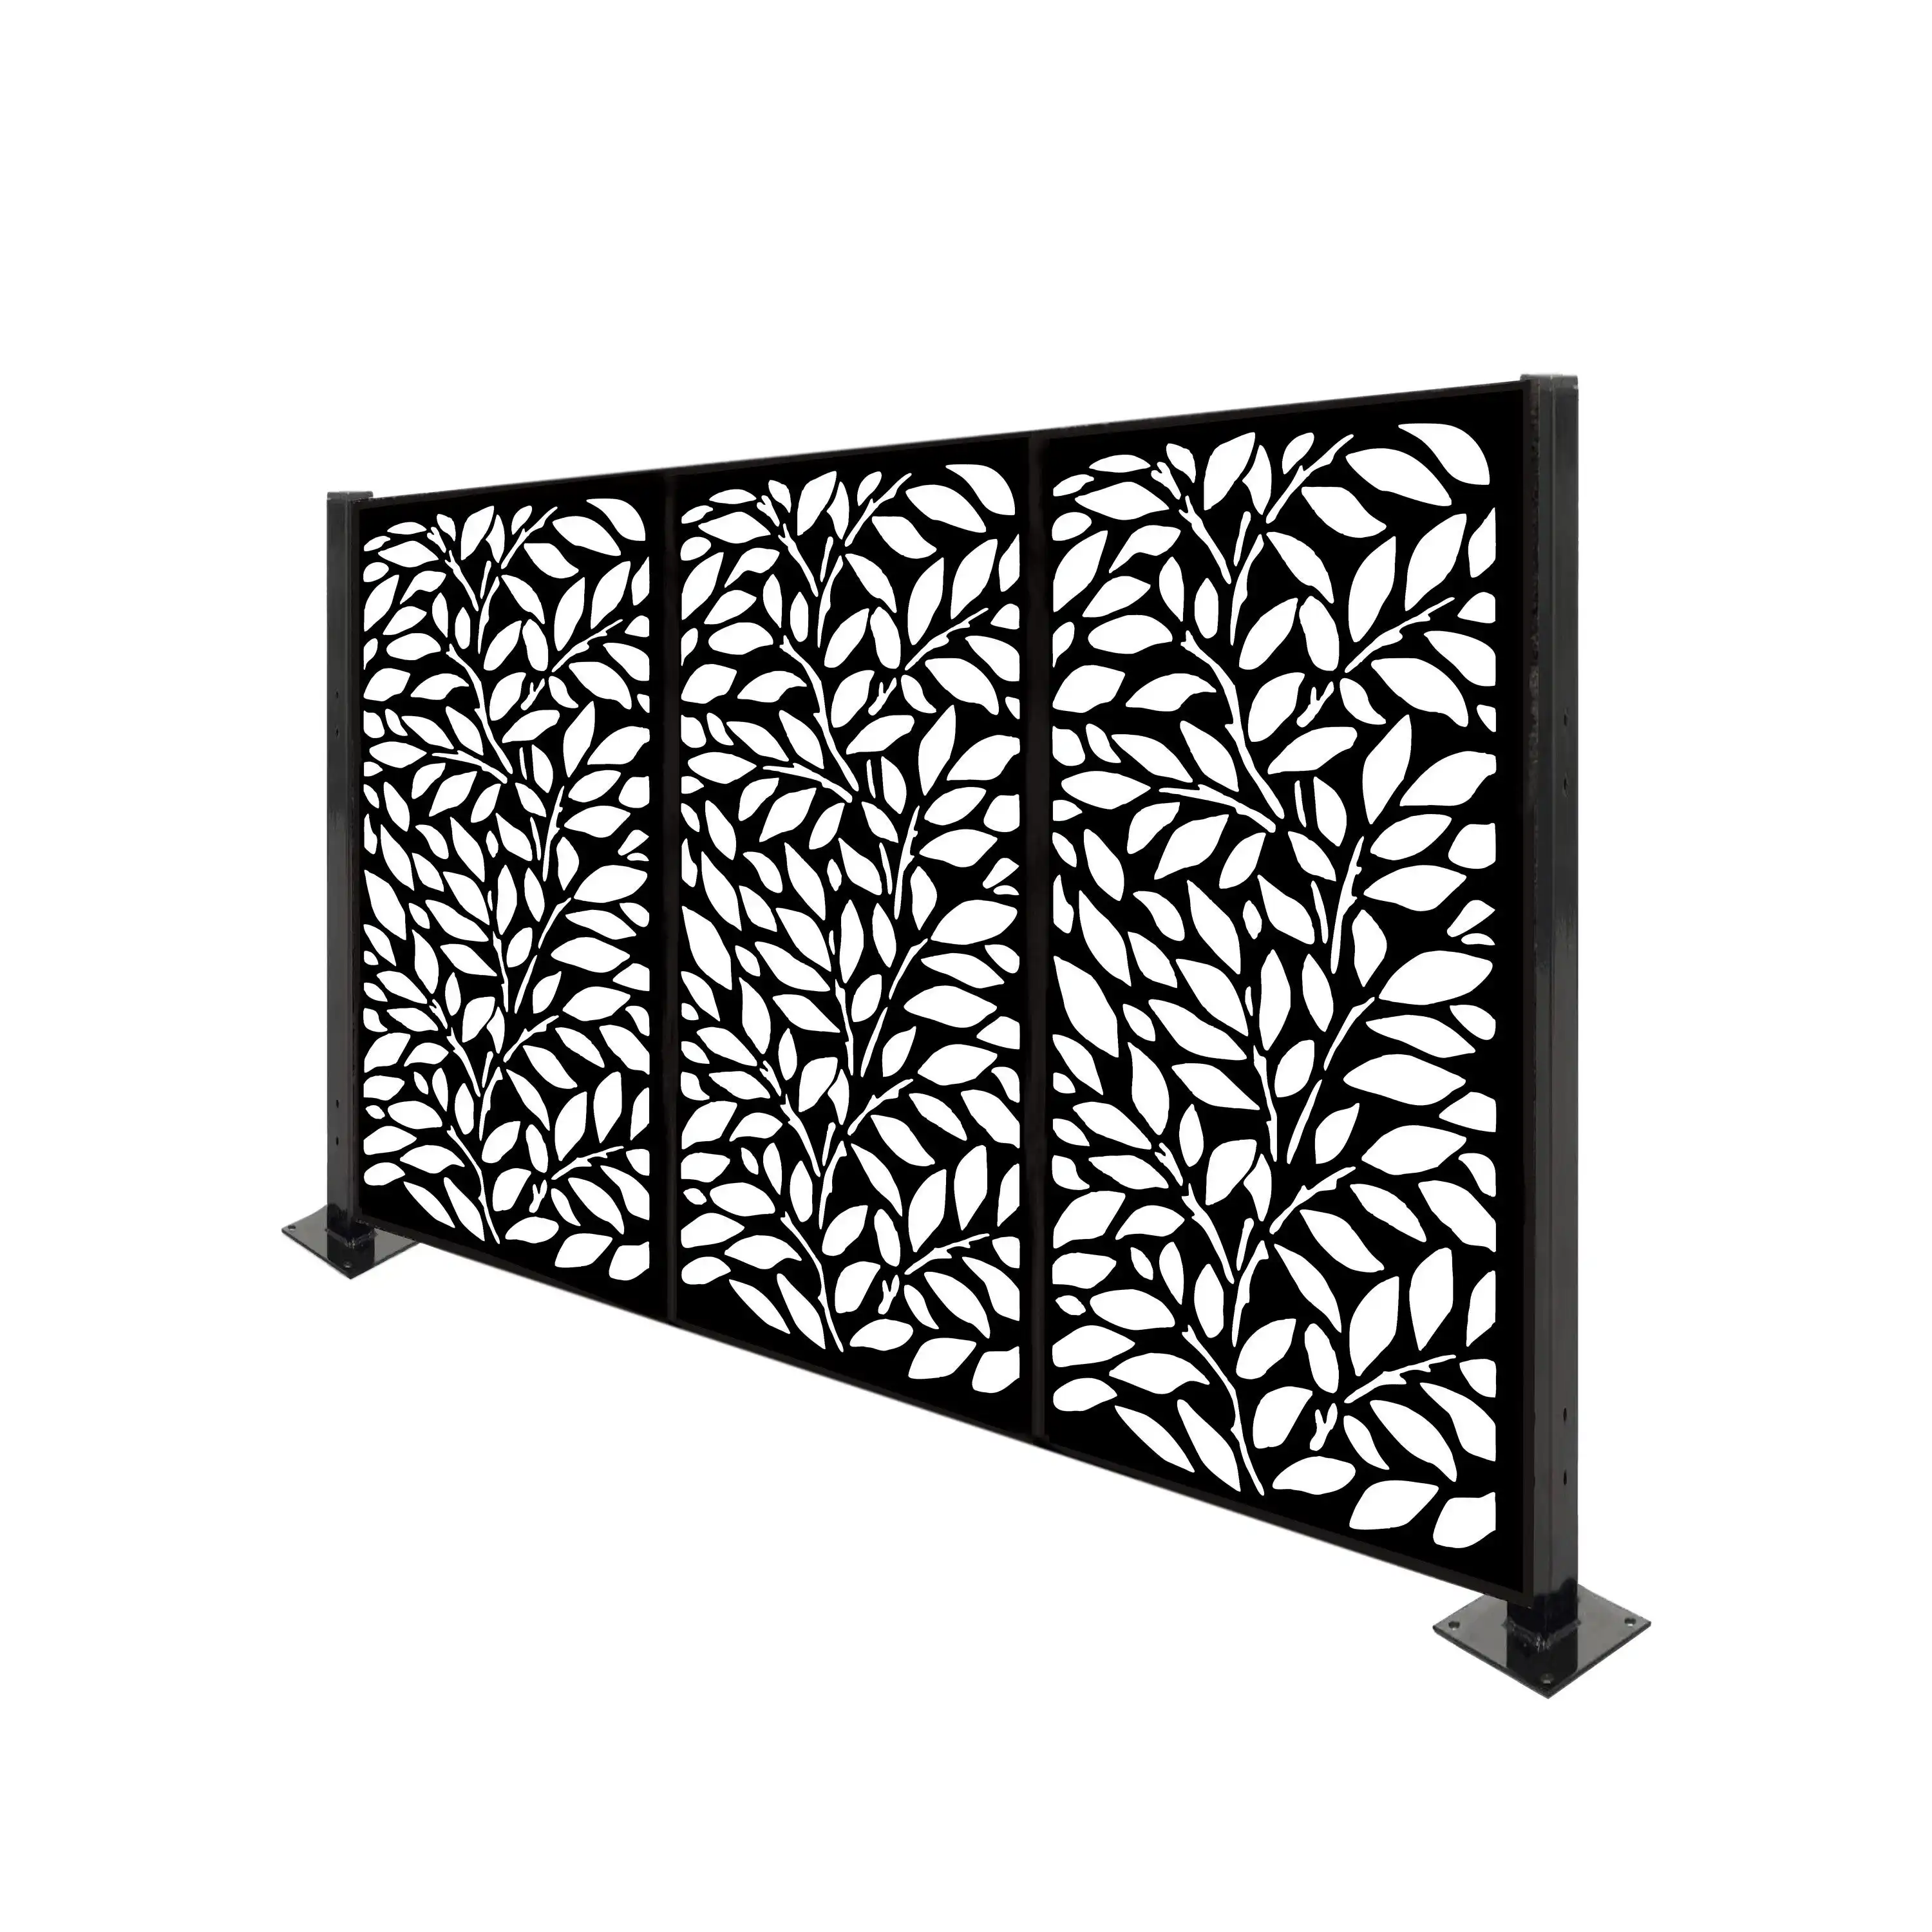 Dekoratif bahçe yeni gizlilik ucuz bahçe çelik sonrası metal lazer kesim alüminyum duvar panelleri eskrim kafes tasarımları